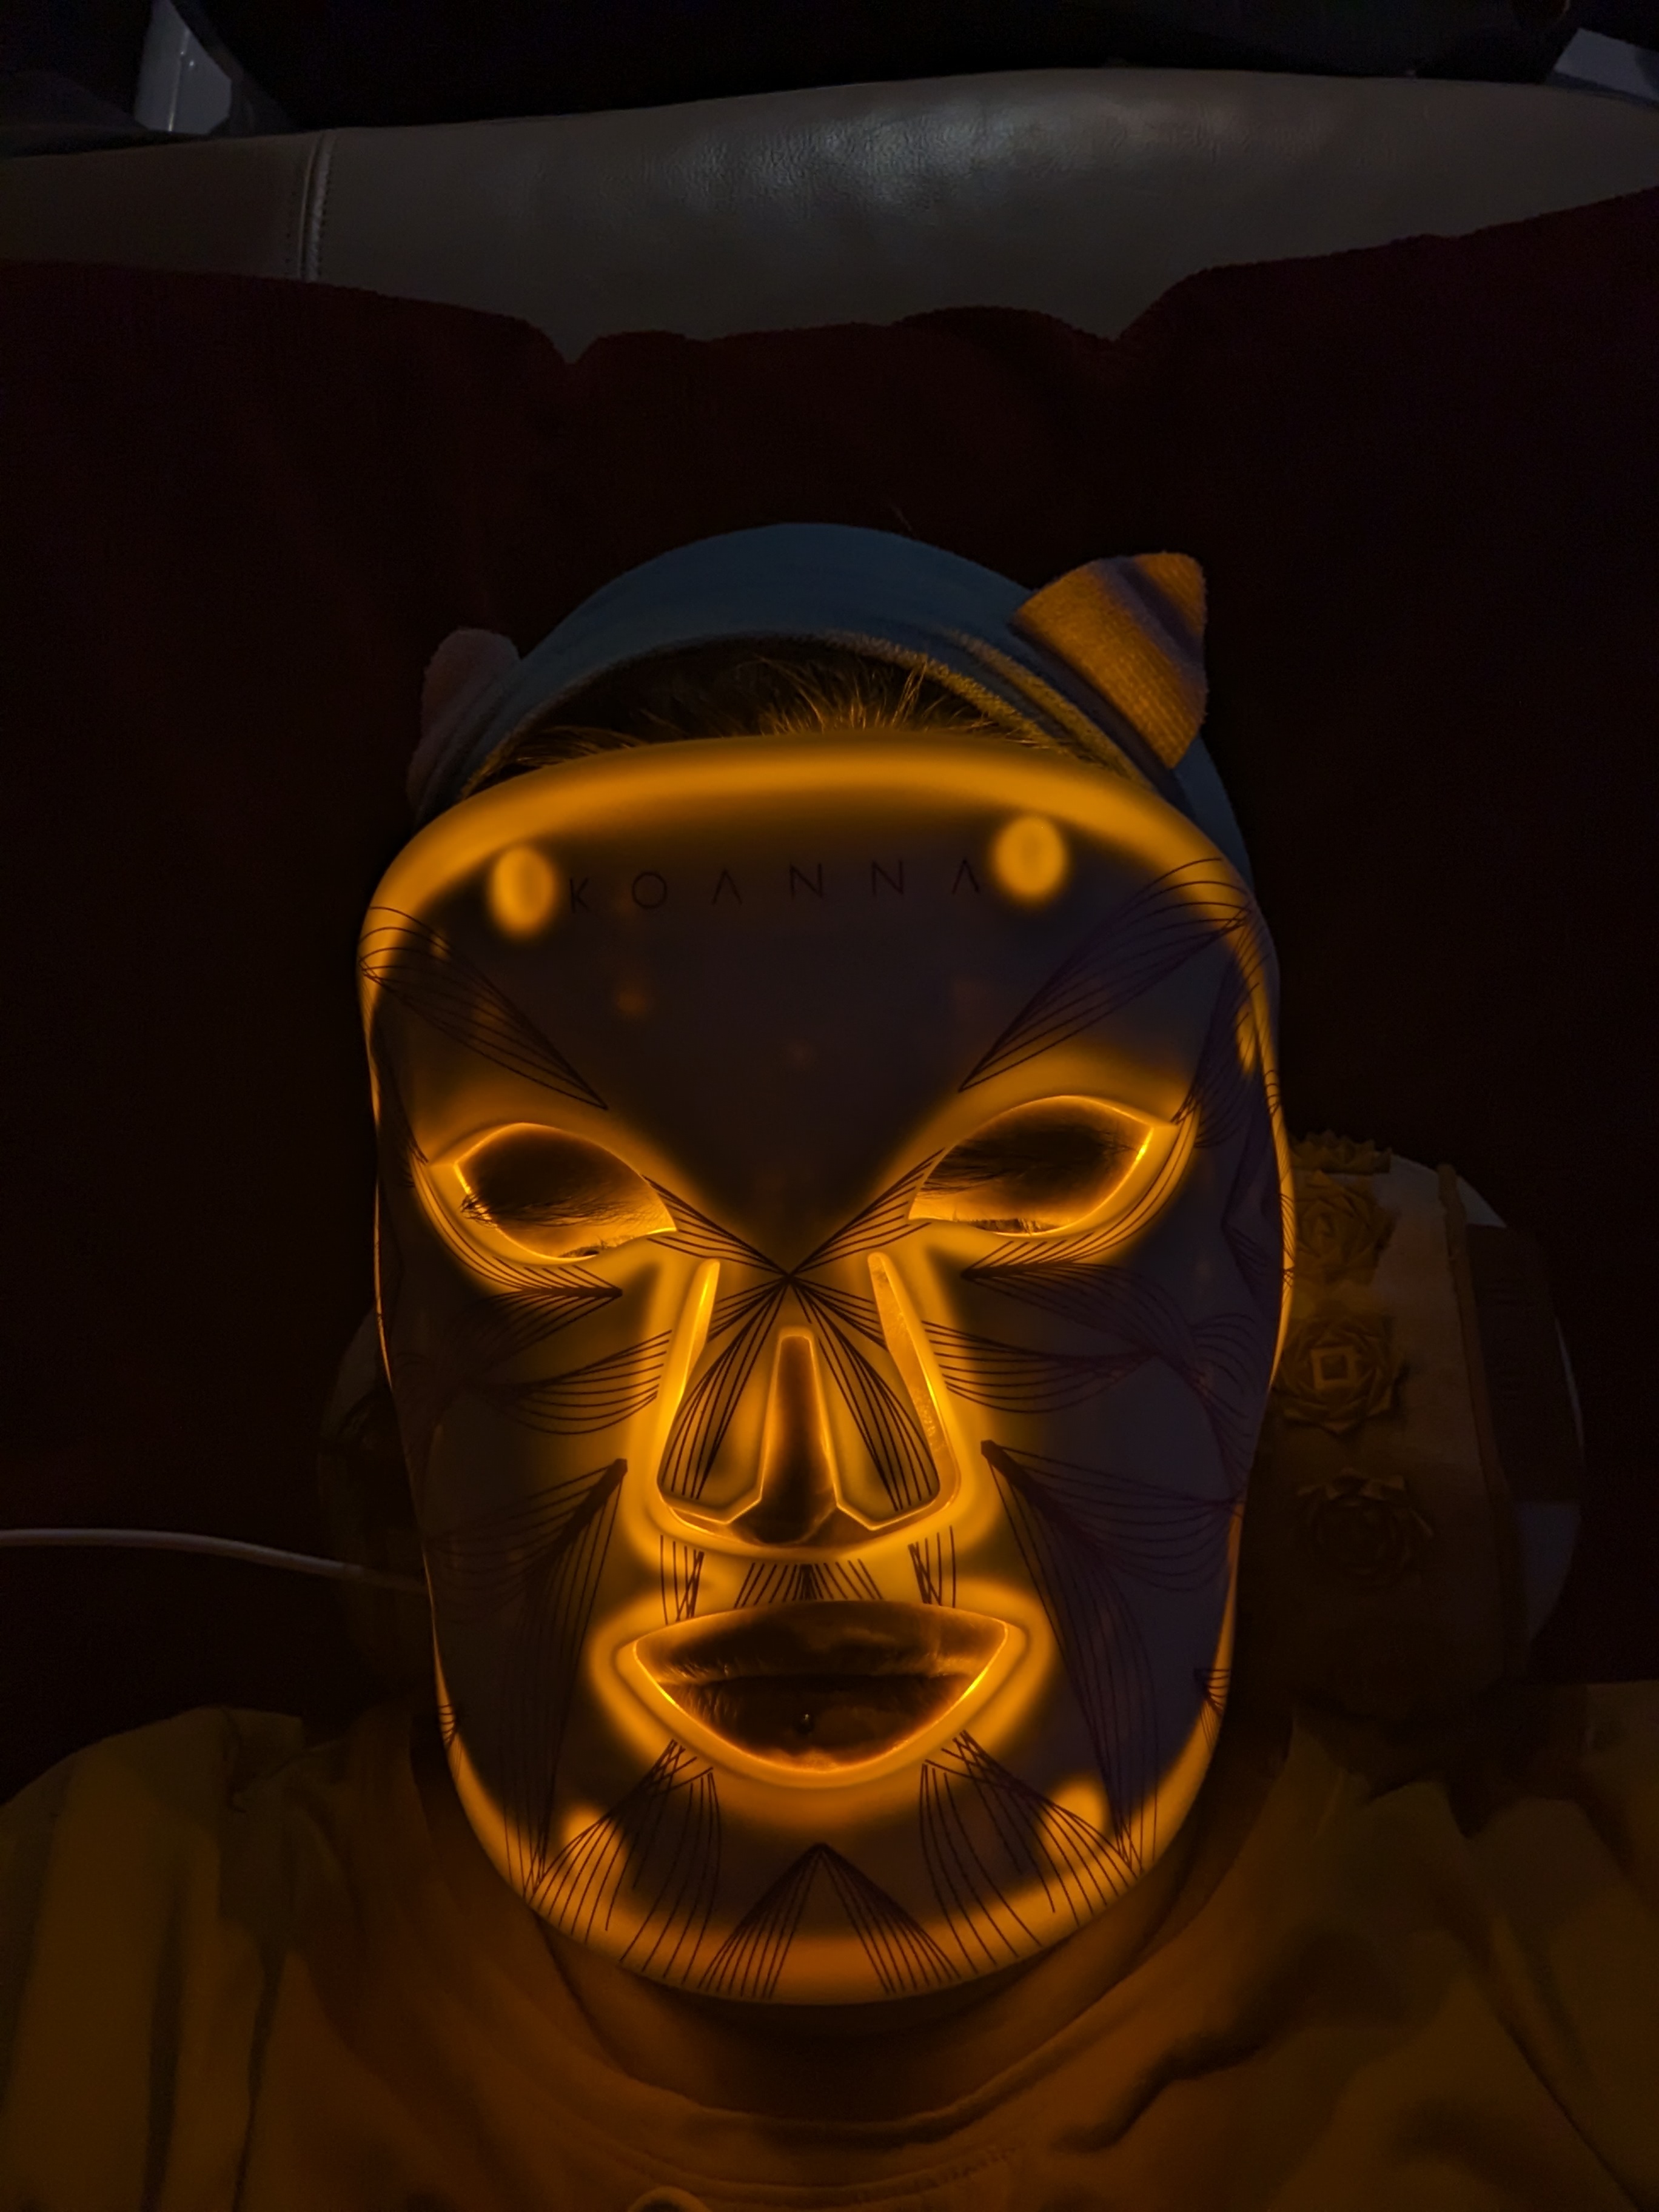 LED Lichttherapie-Maske von Koanna - Benutzung Bild 8